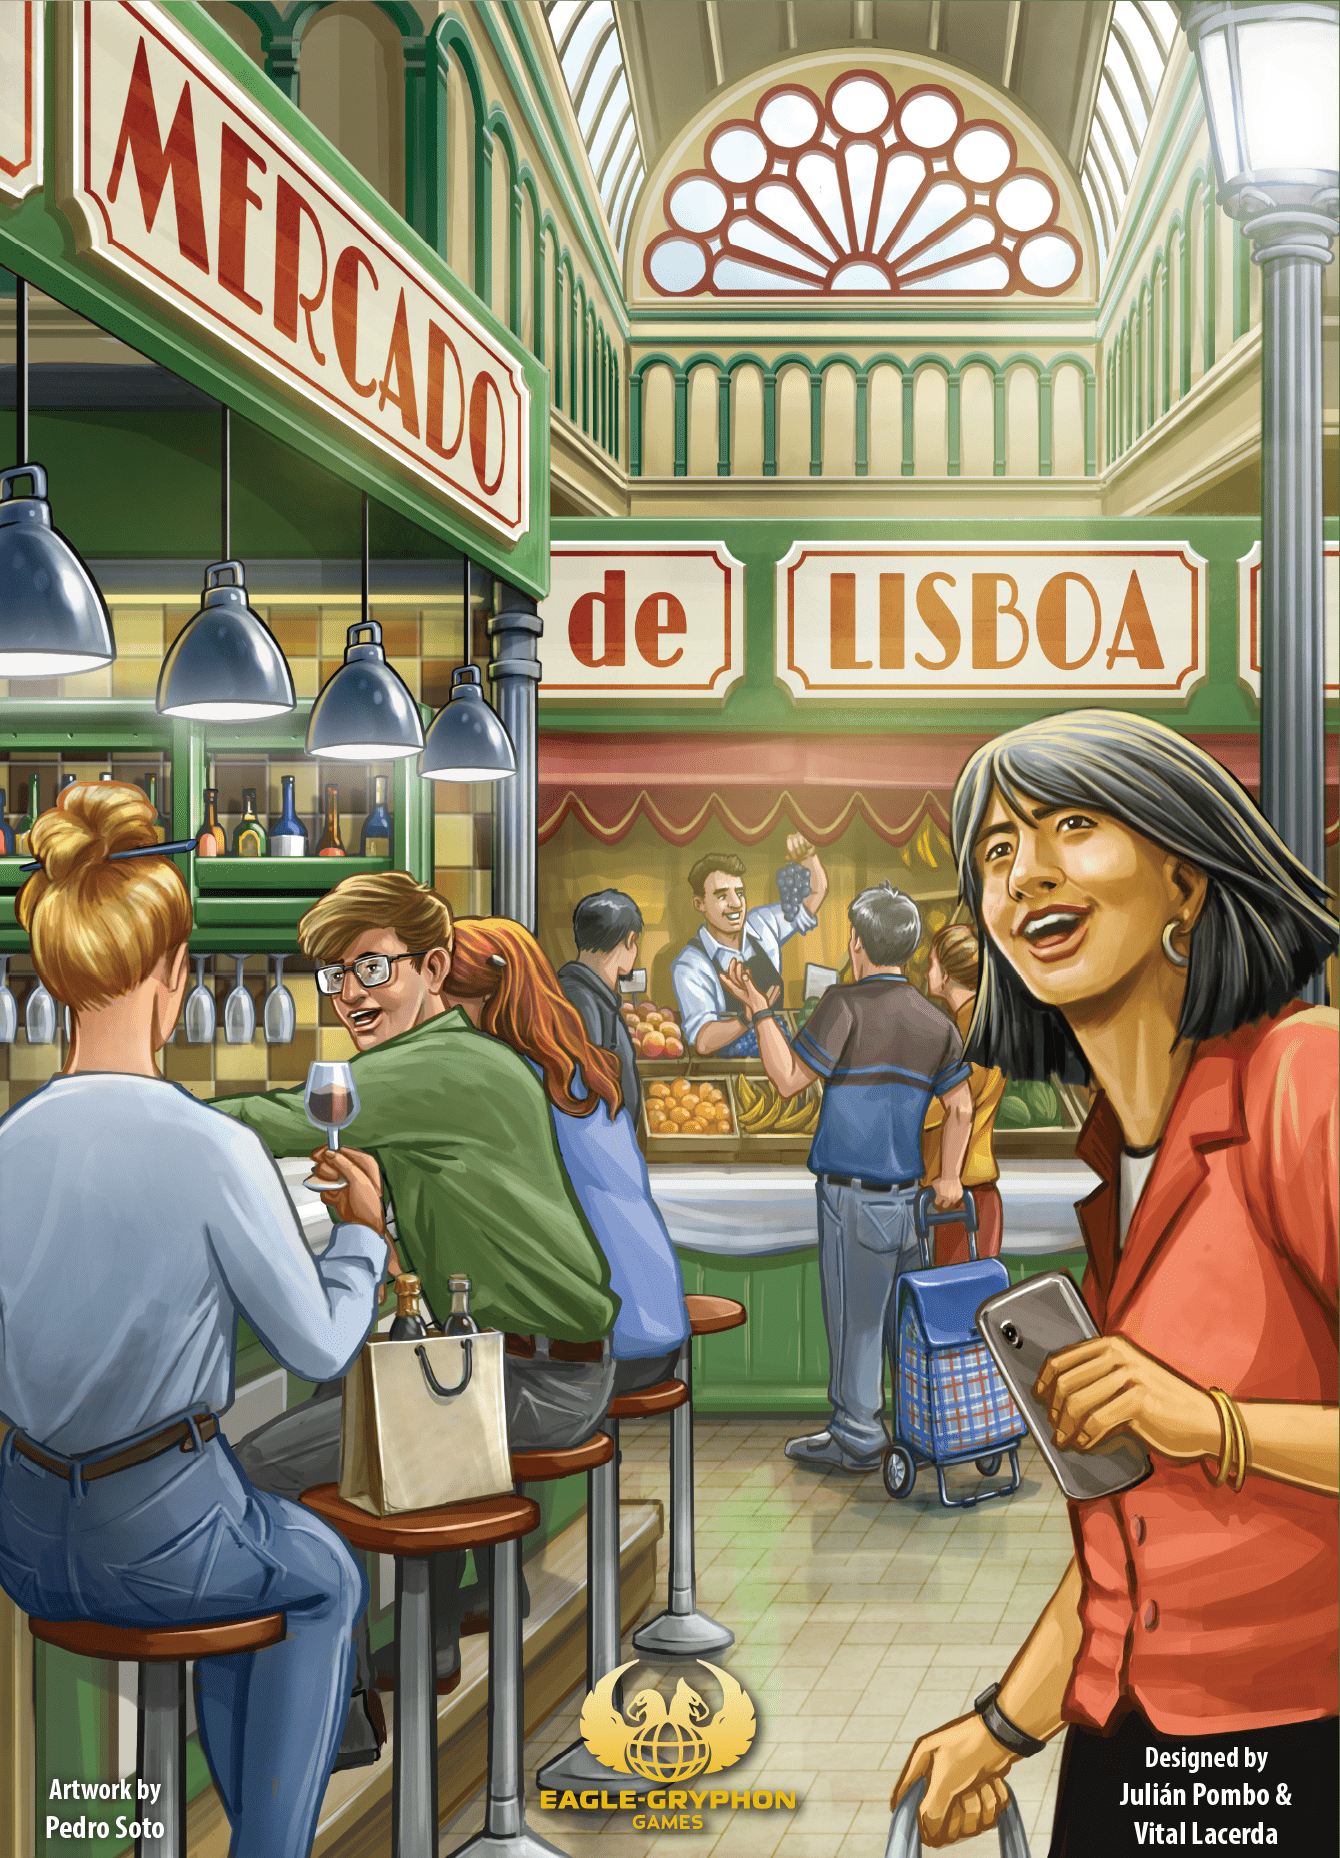 Mercado de Lisboa